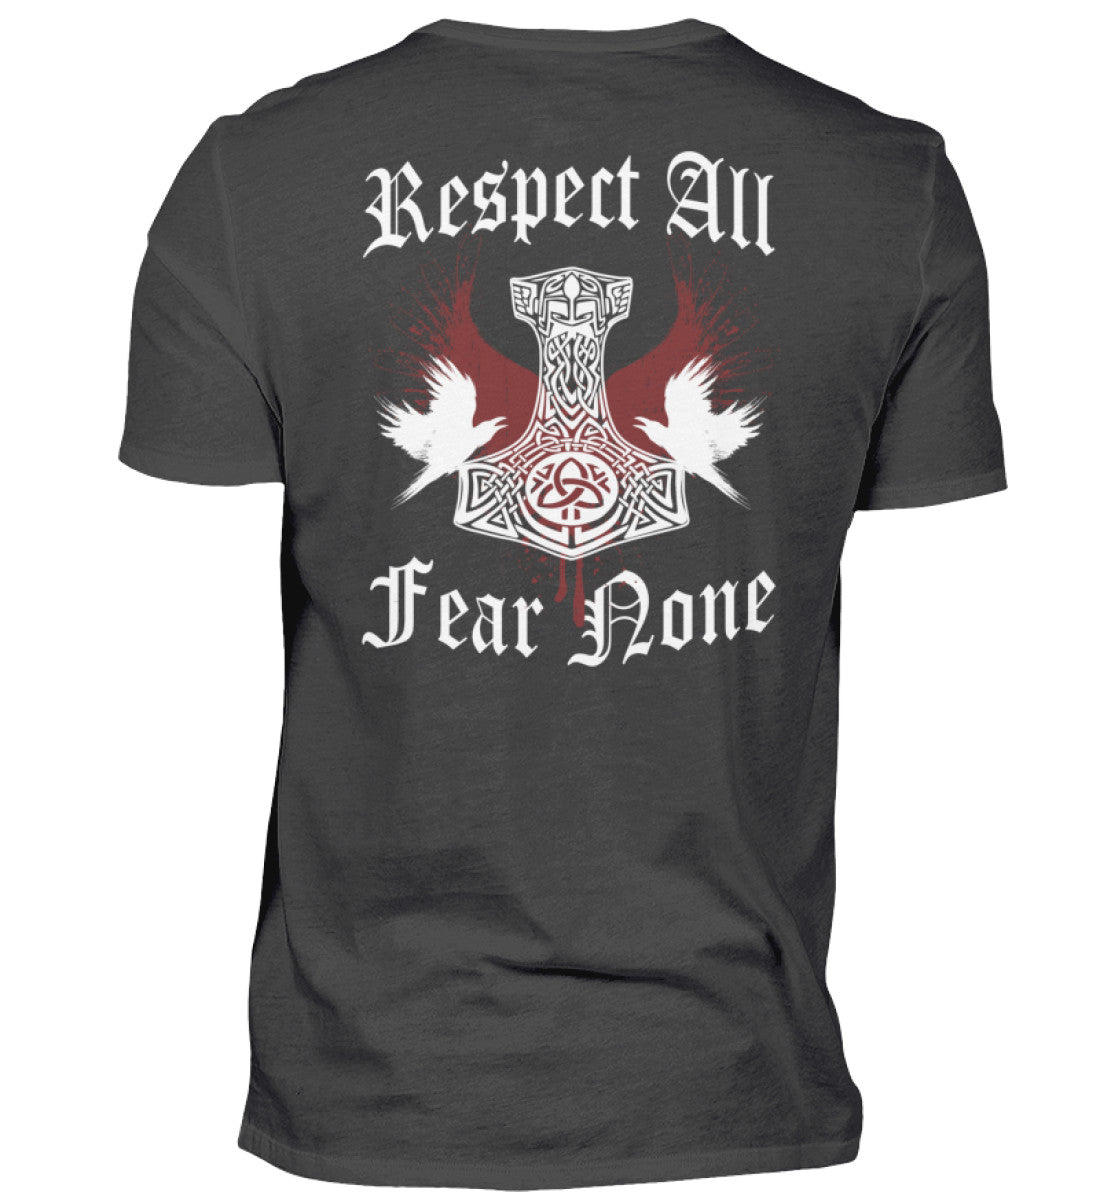 Ein T-Shirt für Motorradfahrer von Wingbikers mit dem Aufdruck, Respekt All - Fear None - mit einem Thorshammer, in dunkelgrau.